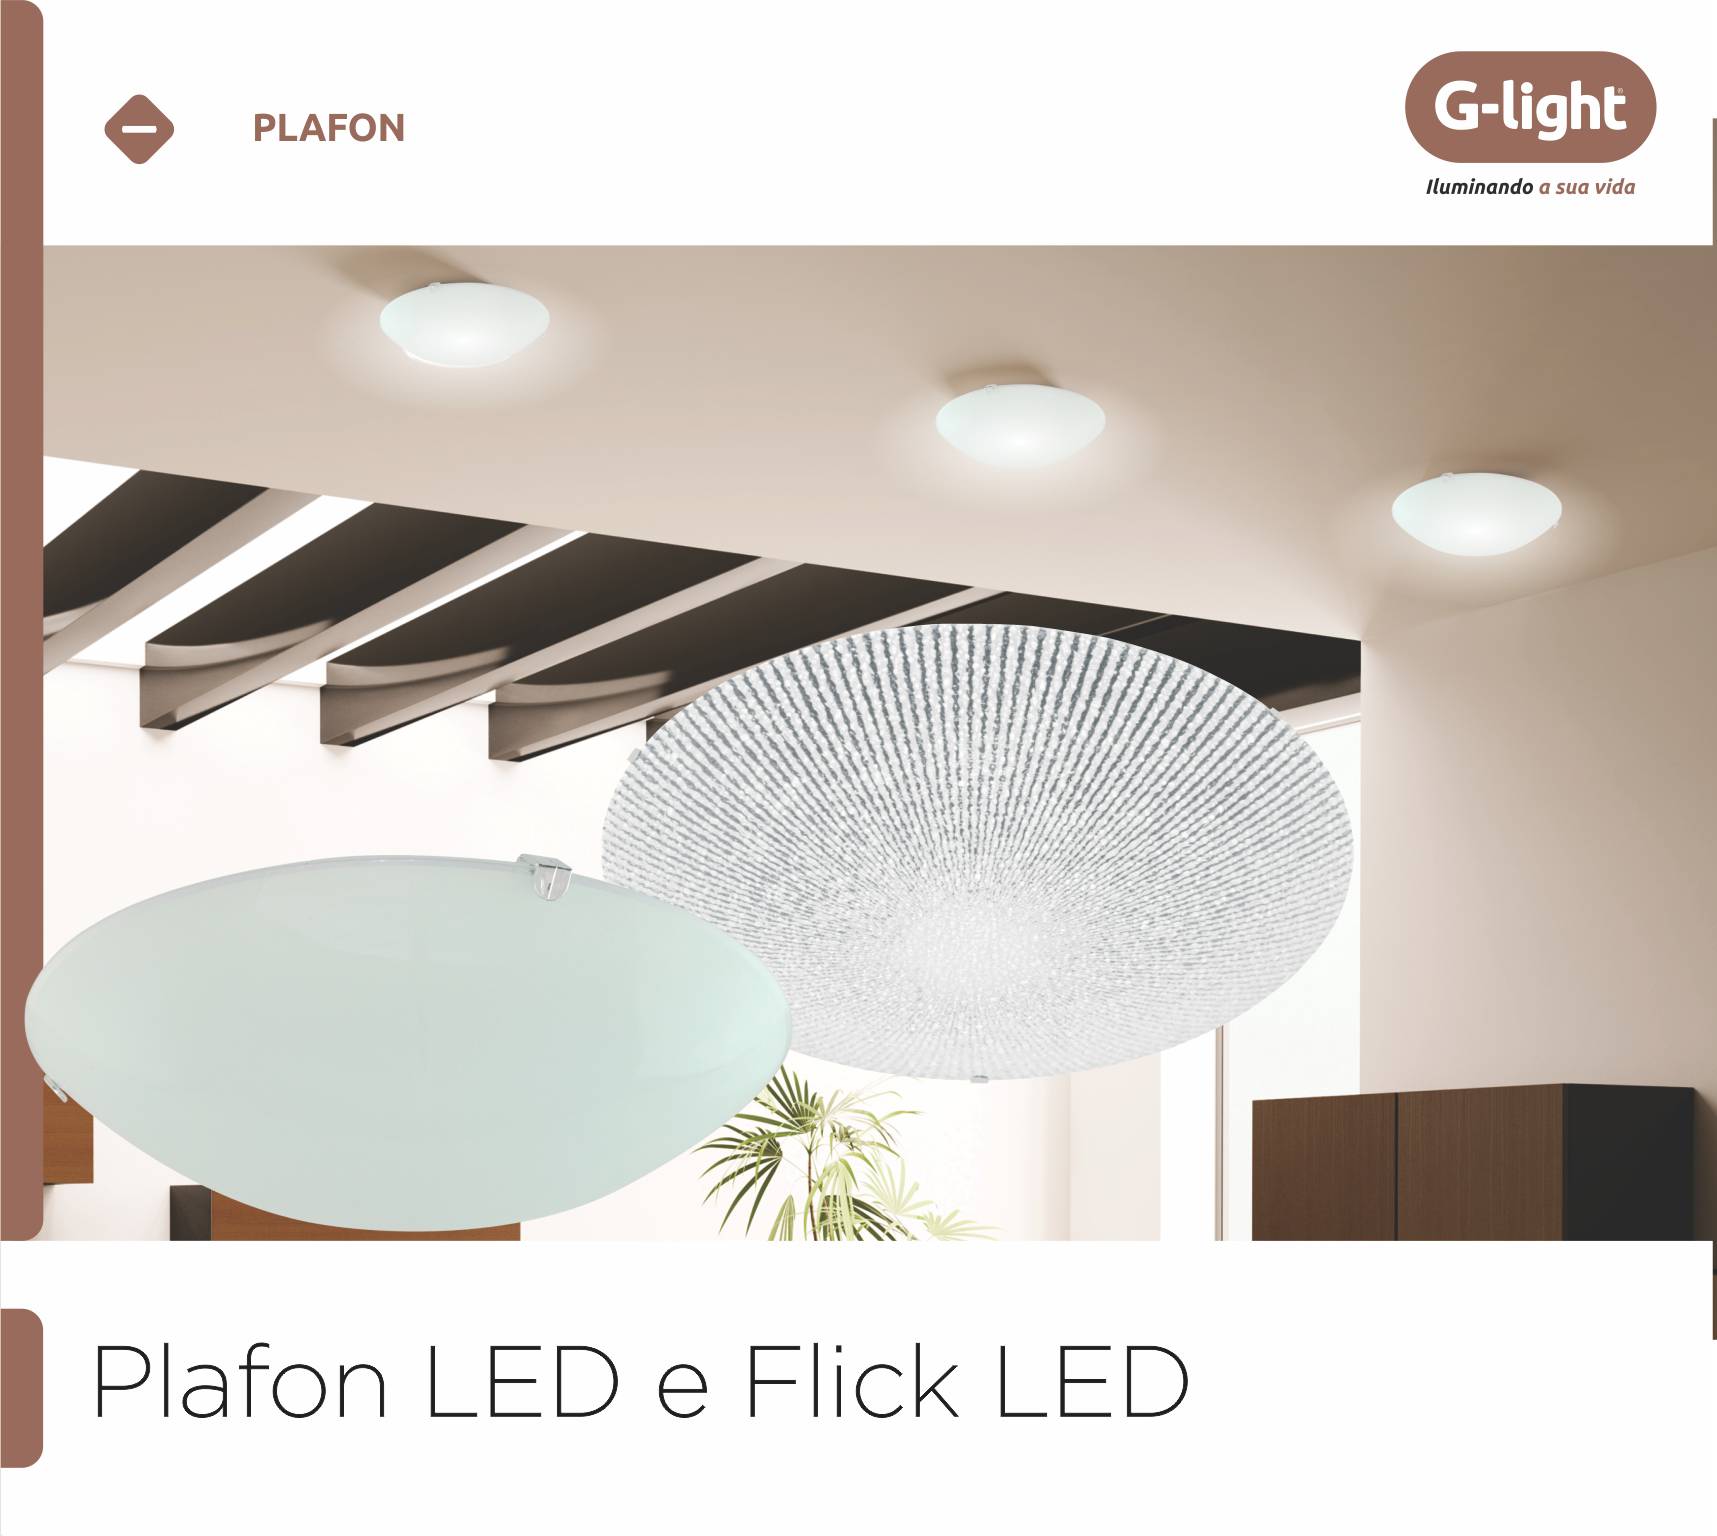 Plafon LED e Flick LED